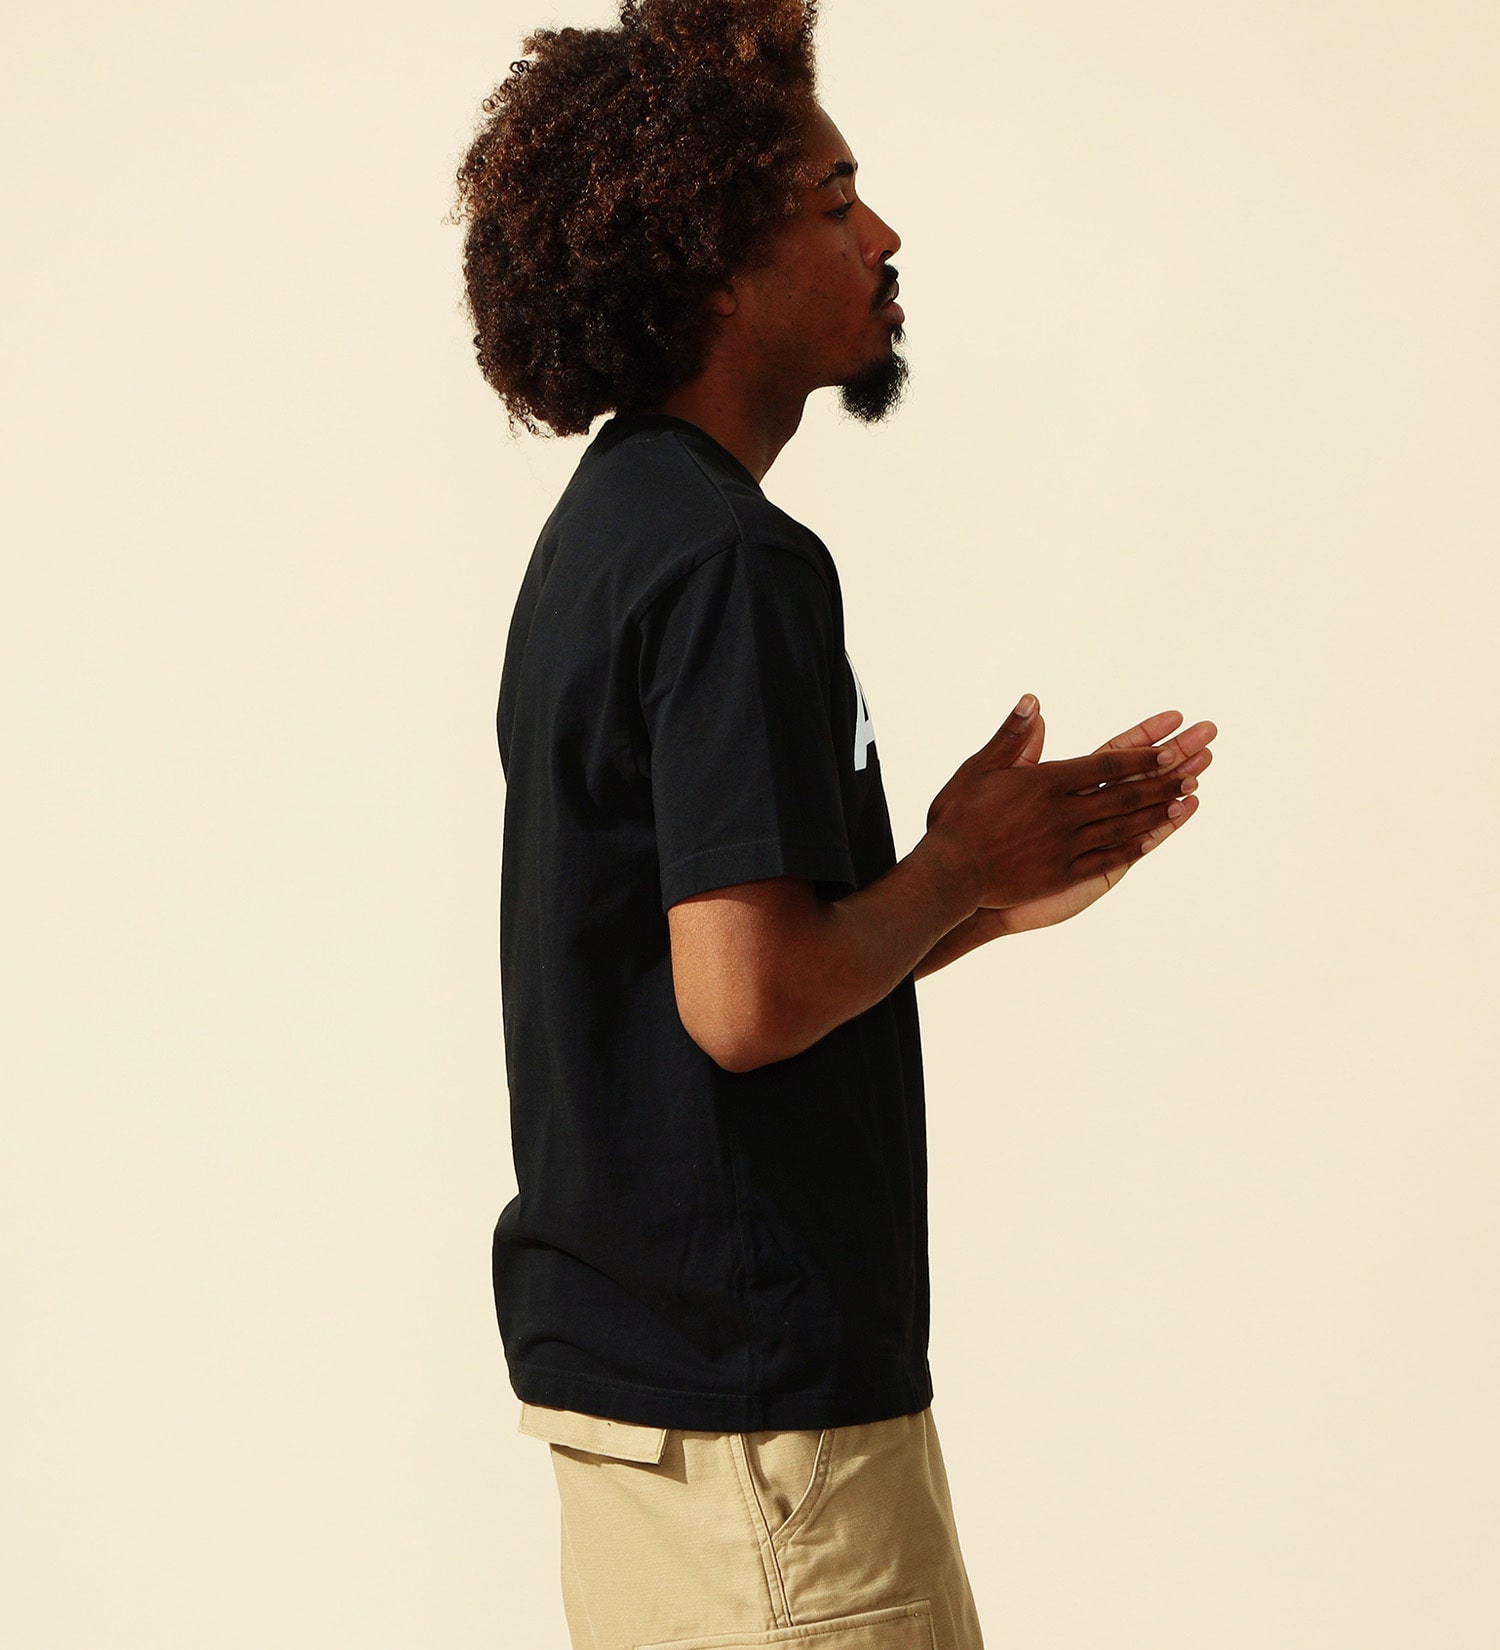 ALPHA(アルファ)のARMYプリントTシャツ 半袖|トップス/Tシャツ/カットソー/メンズ|ブラック